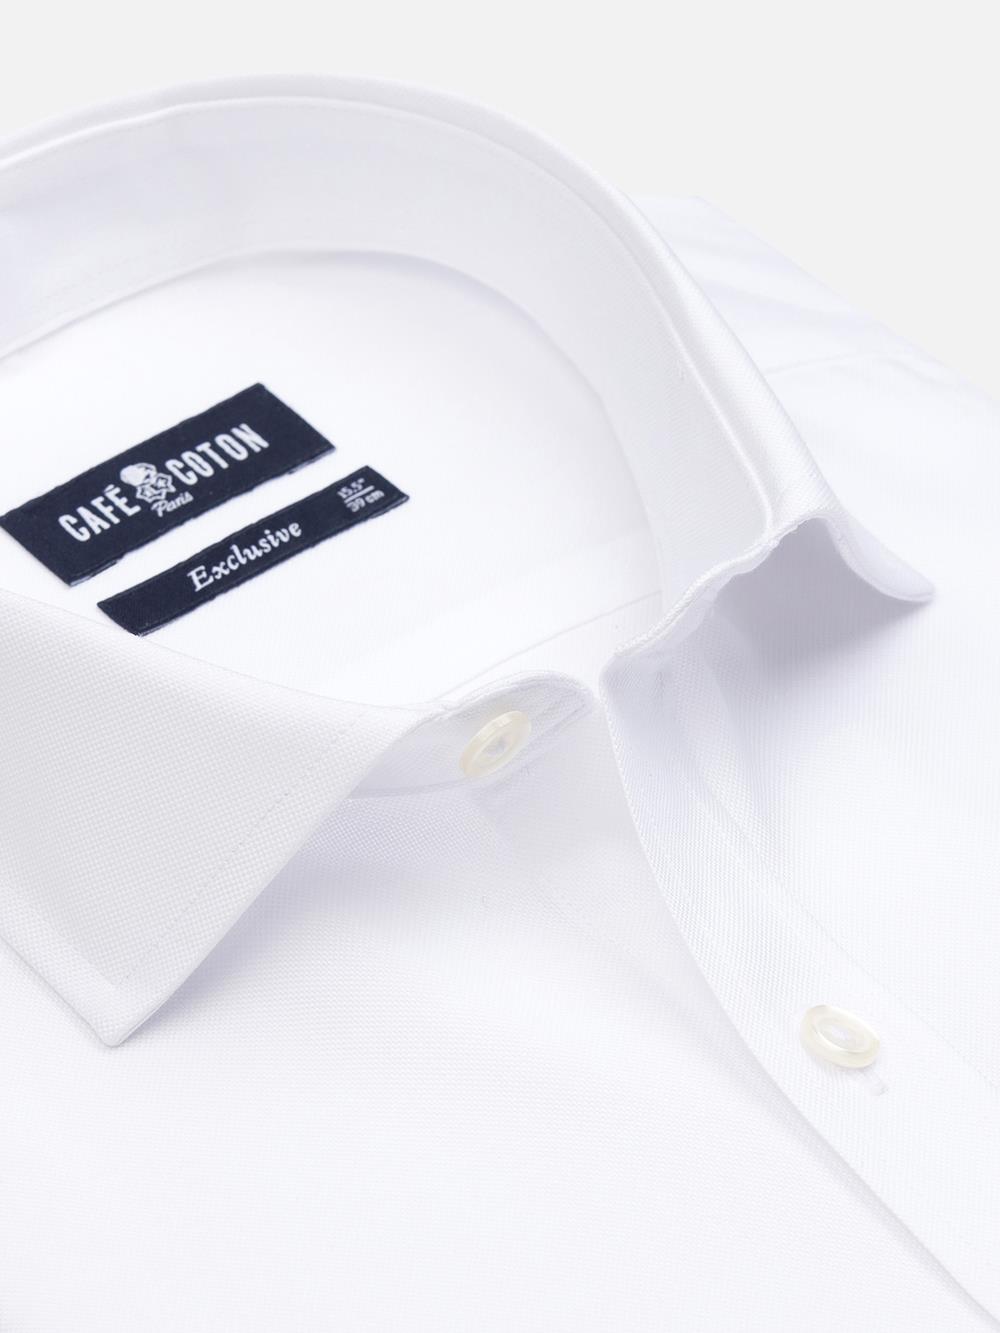 Camicia slim fit oxford bianca - Manica Lunga